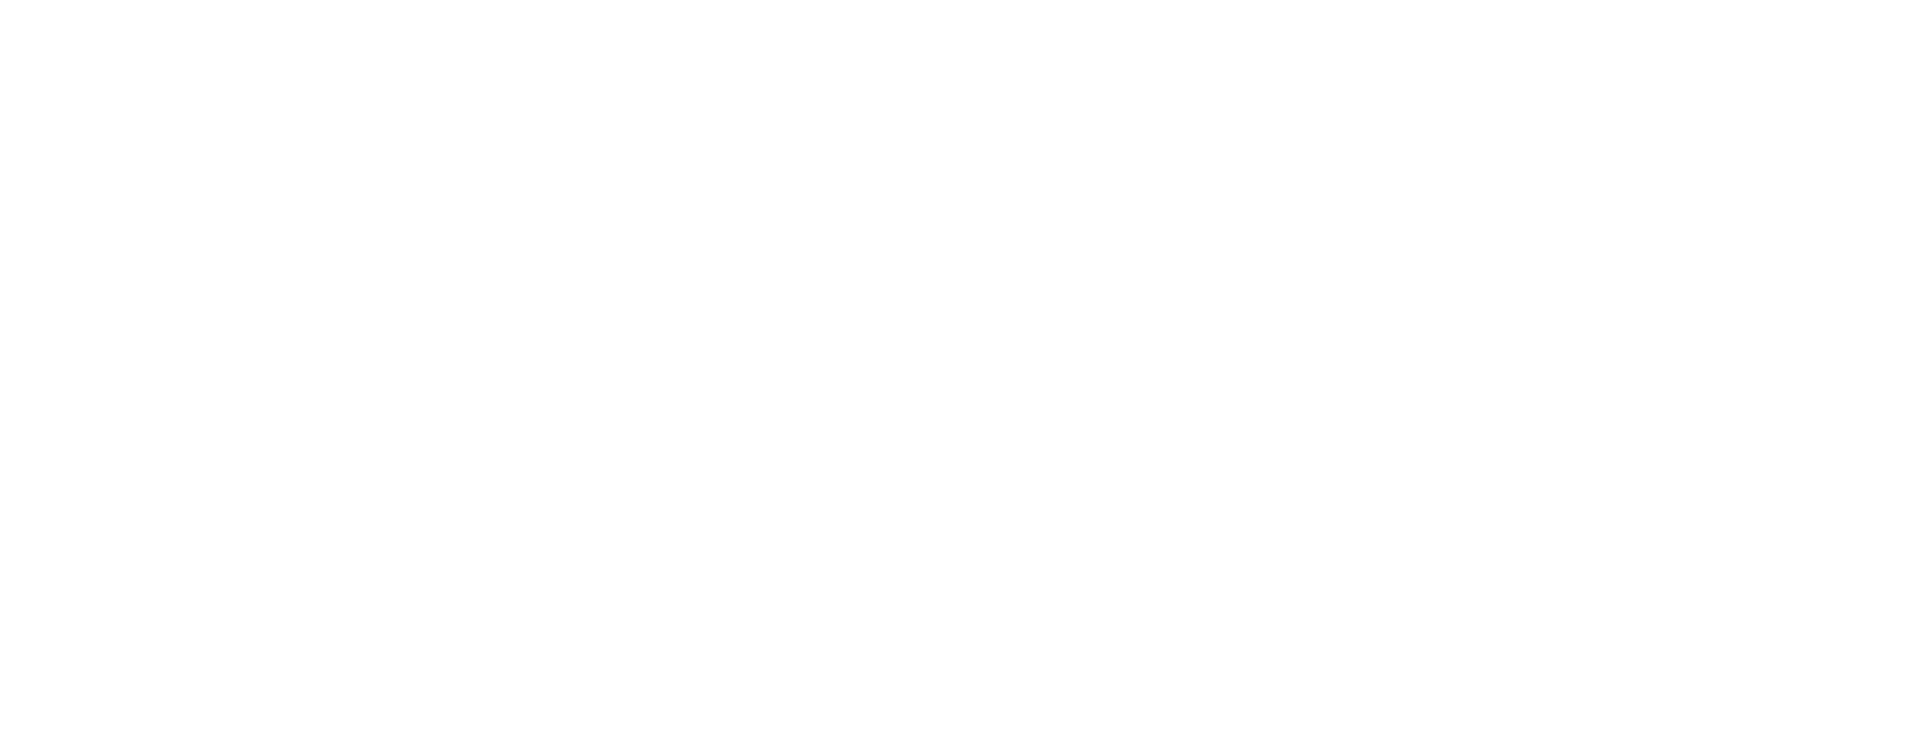 SPS Companies